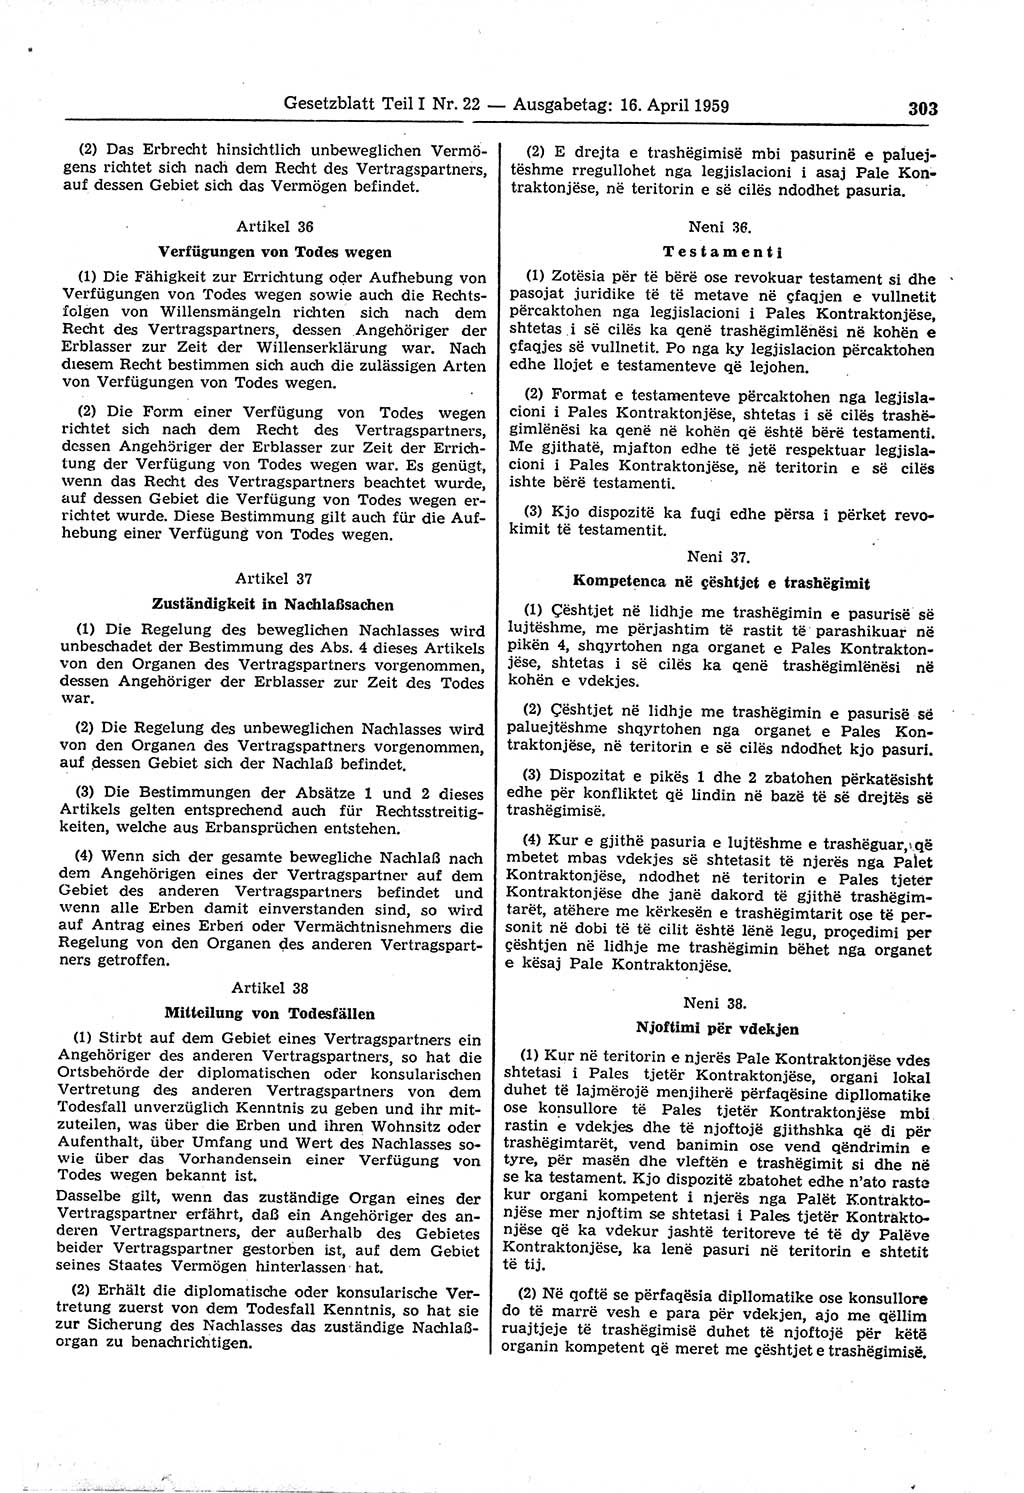 Gesetzblatt (GBl.) der Deutschen Demokratischen Republik (DDR) Teil Ⅰ 1959, Seite 303 (GBl. DDR Ⅰ 1959, S. 303)